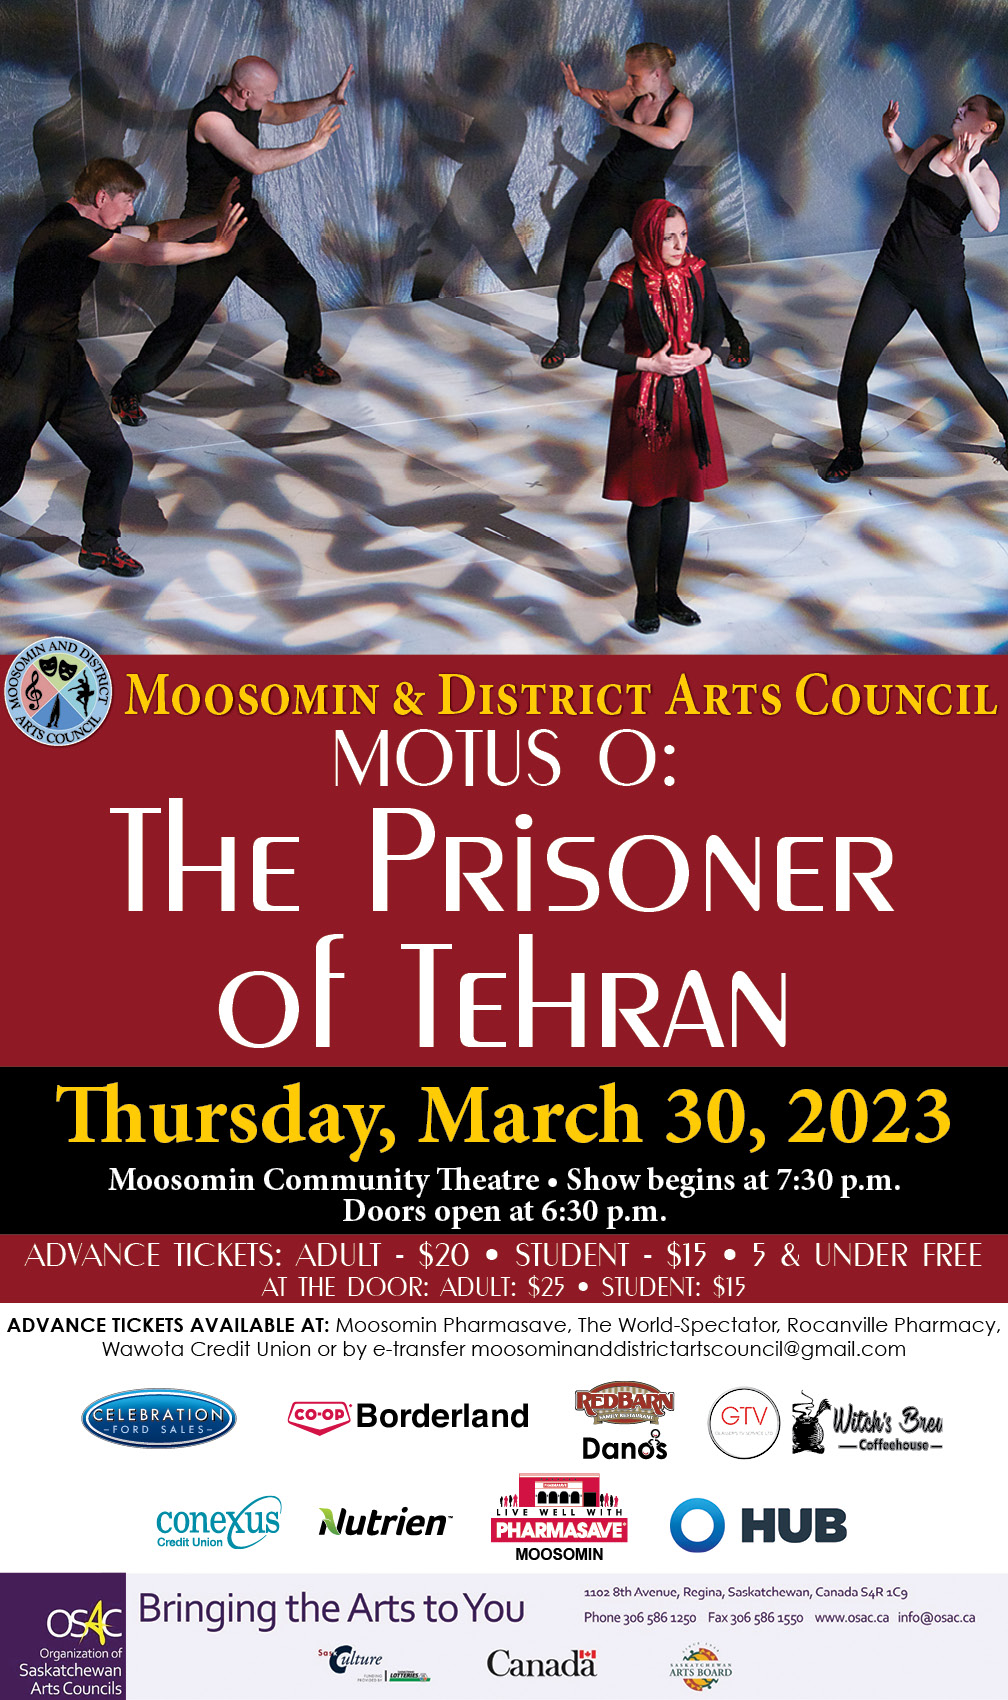 Moosomin & District Arts Council presents Motus O: The Prisoner of Tehran